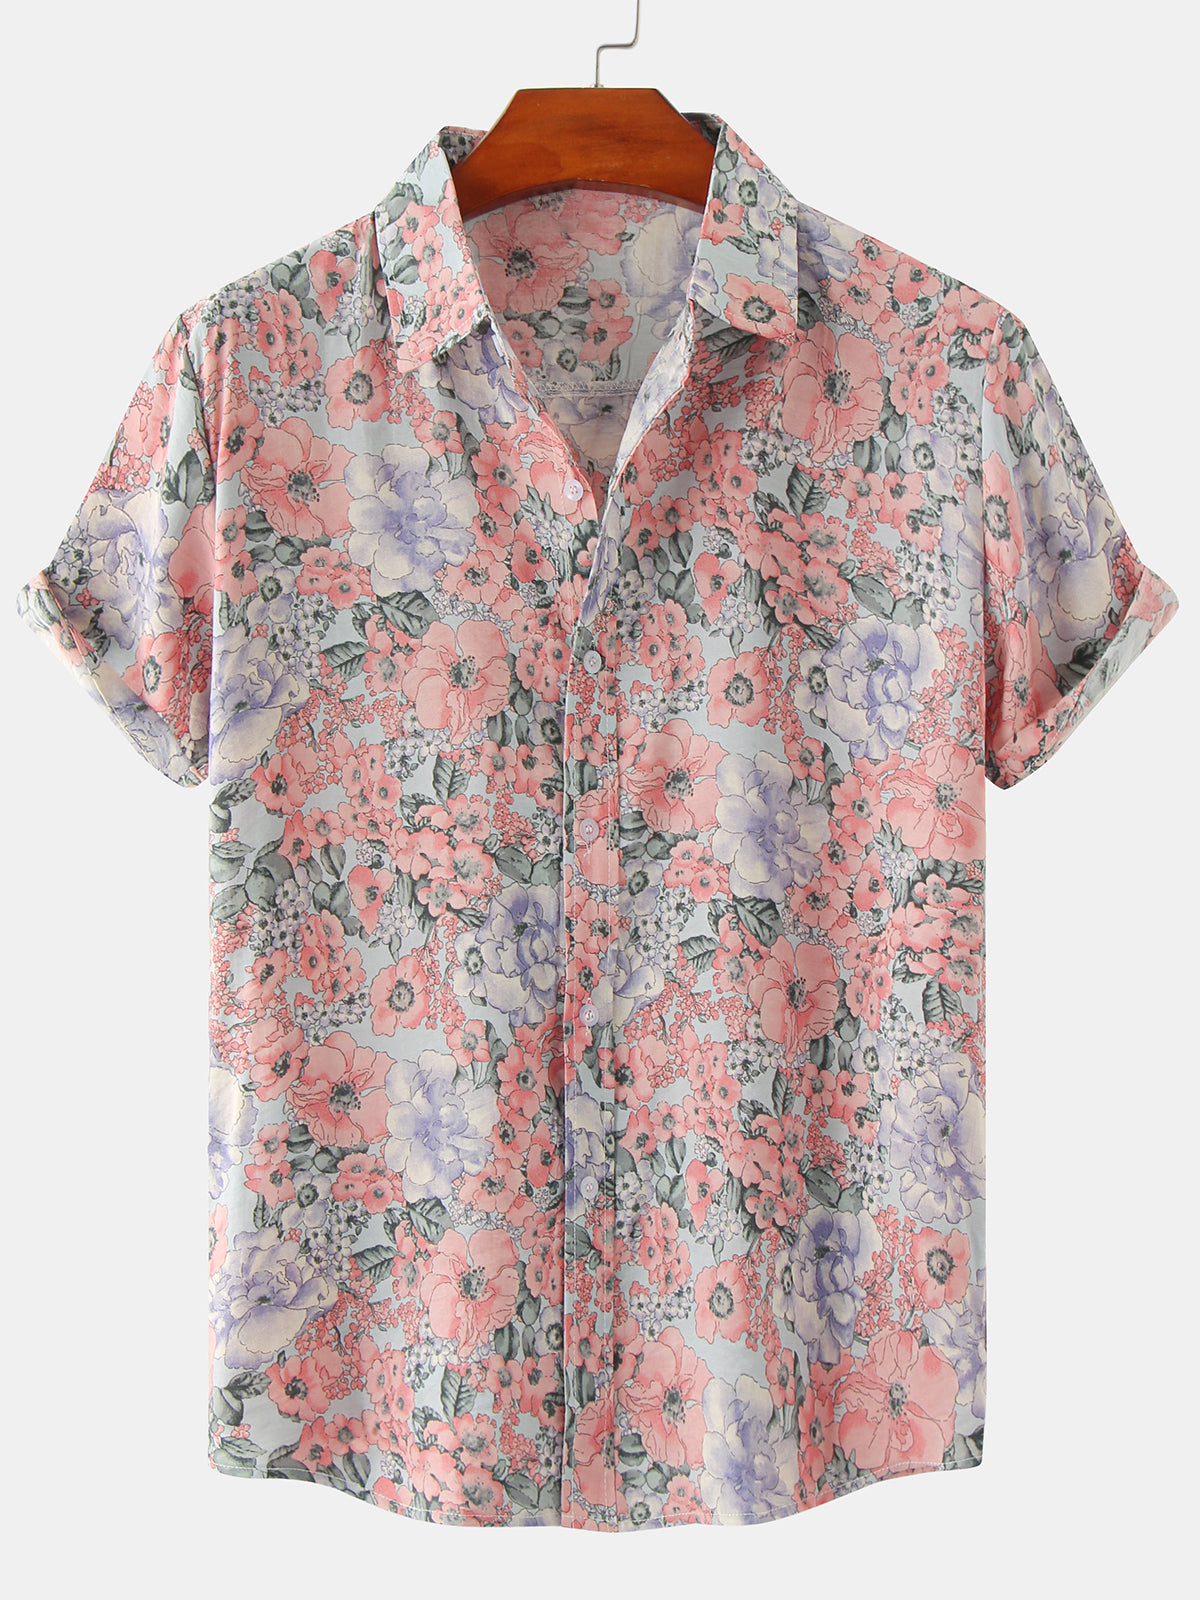 Men's Vintage Floral Print Summer Casual Pink Short Sleeve Shirt